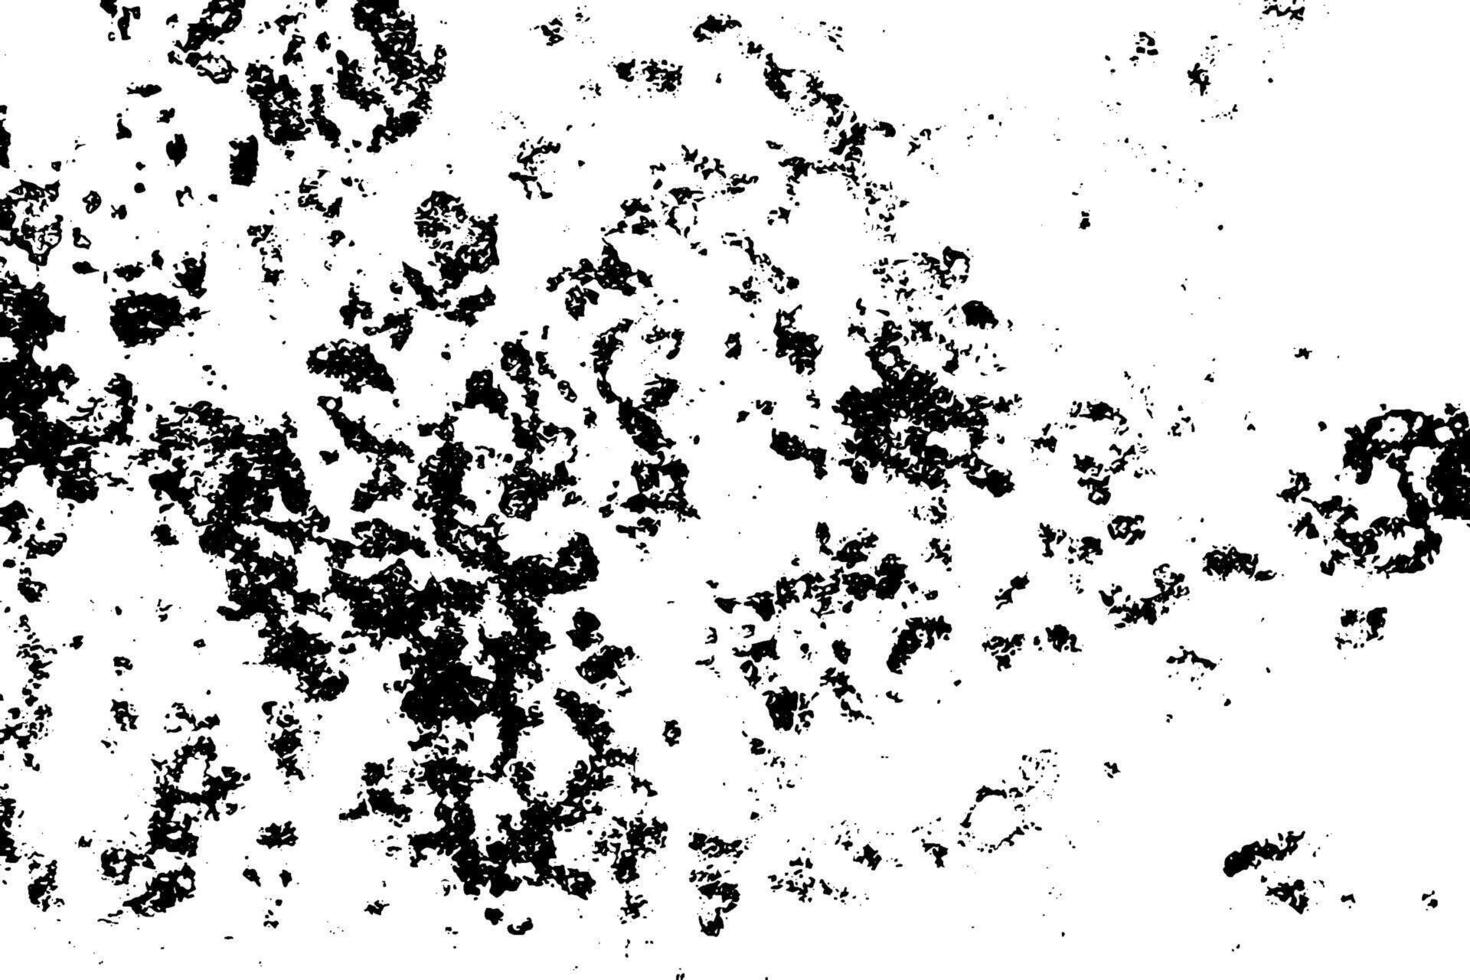 fundo grunge de preto e branco. textura de ilustração abstrata de rachaduras, fichas, ponto. padrão monocromático sujo da velha superfície desgastada. vetor